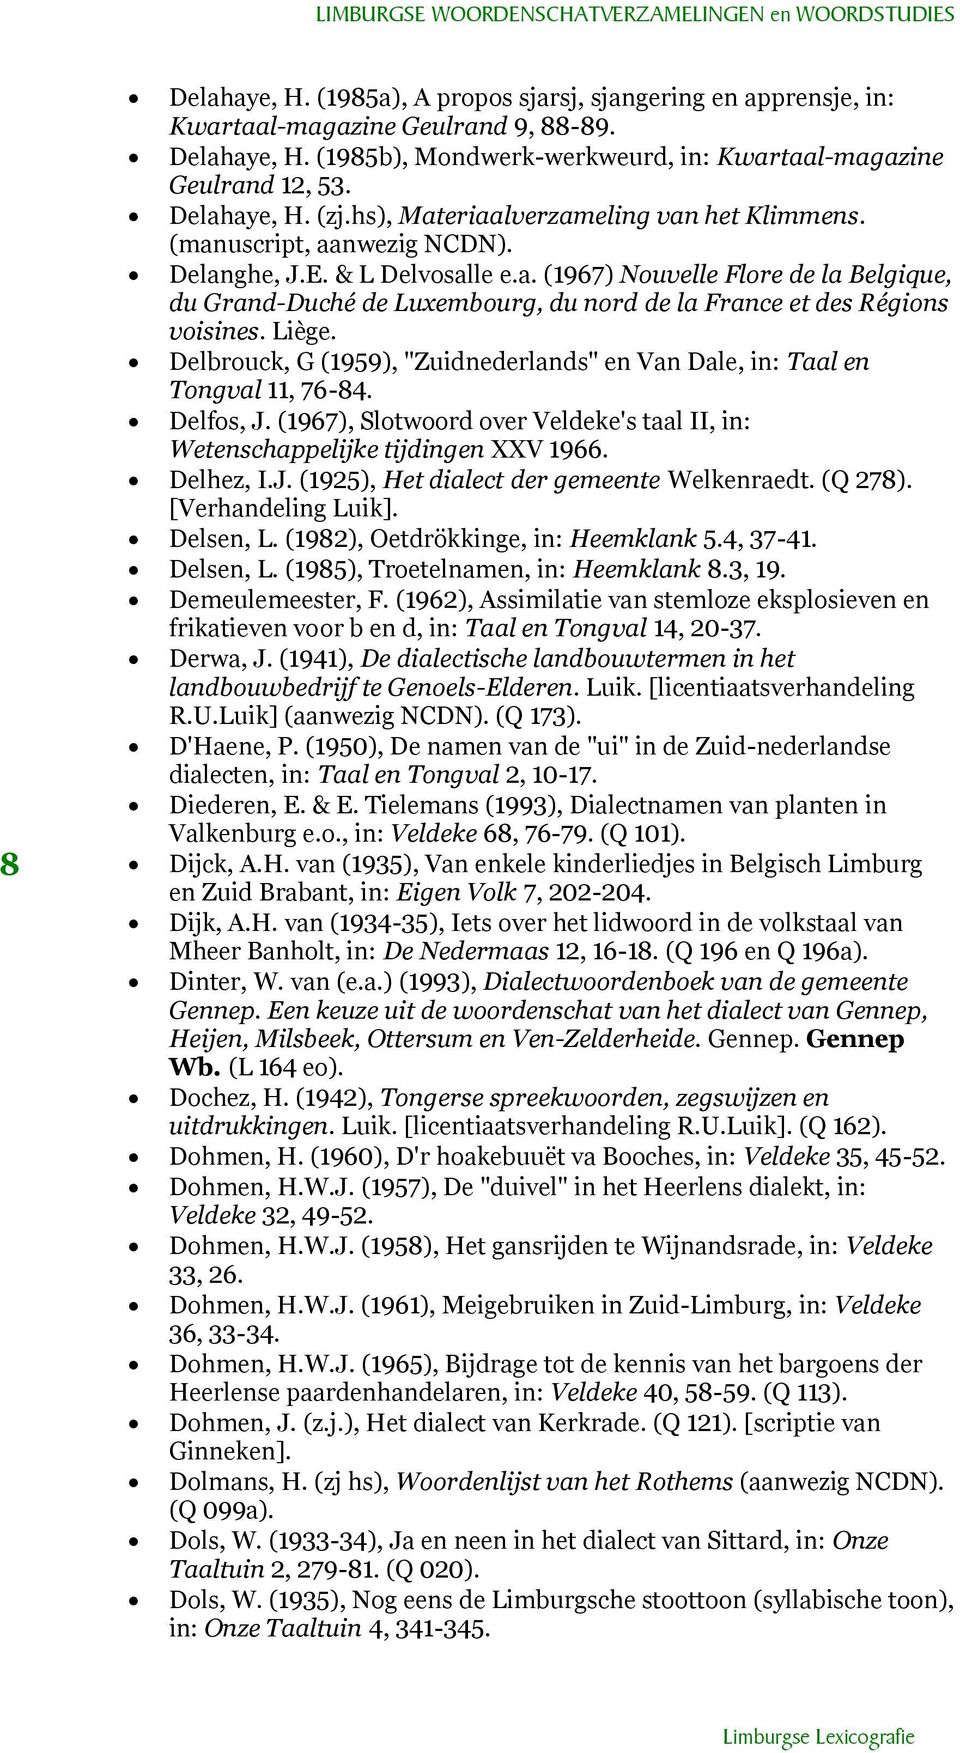 Liège. Delbrouck, G (1959), "Zuidnederlands" en Van Dale, in: Taal en Tongval 11, 76-84. Delfos, J. (1967), Slotwoord over Veldeke's taal II, in: Wetenschappelijke tijdingen XXV 1966. Delhez, I.J. (1925), Het dialect der gemeente Welkenraedt.